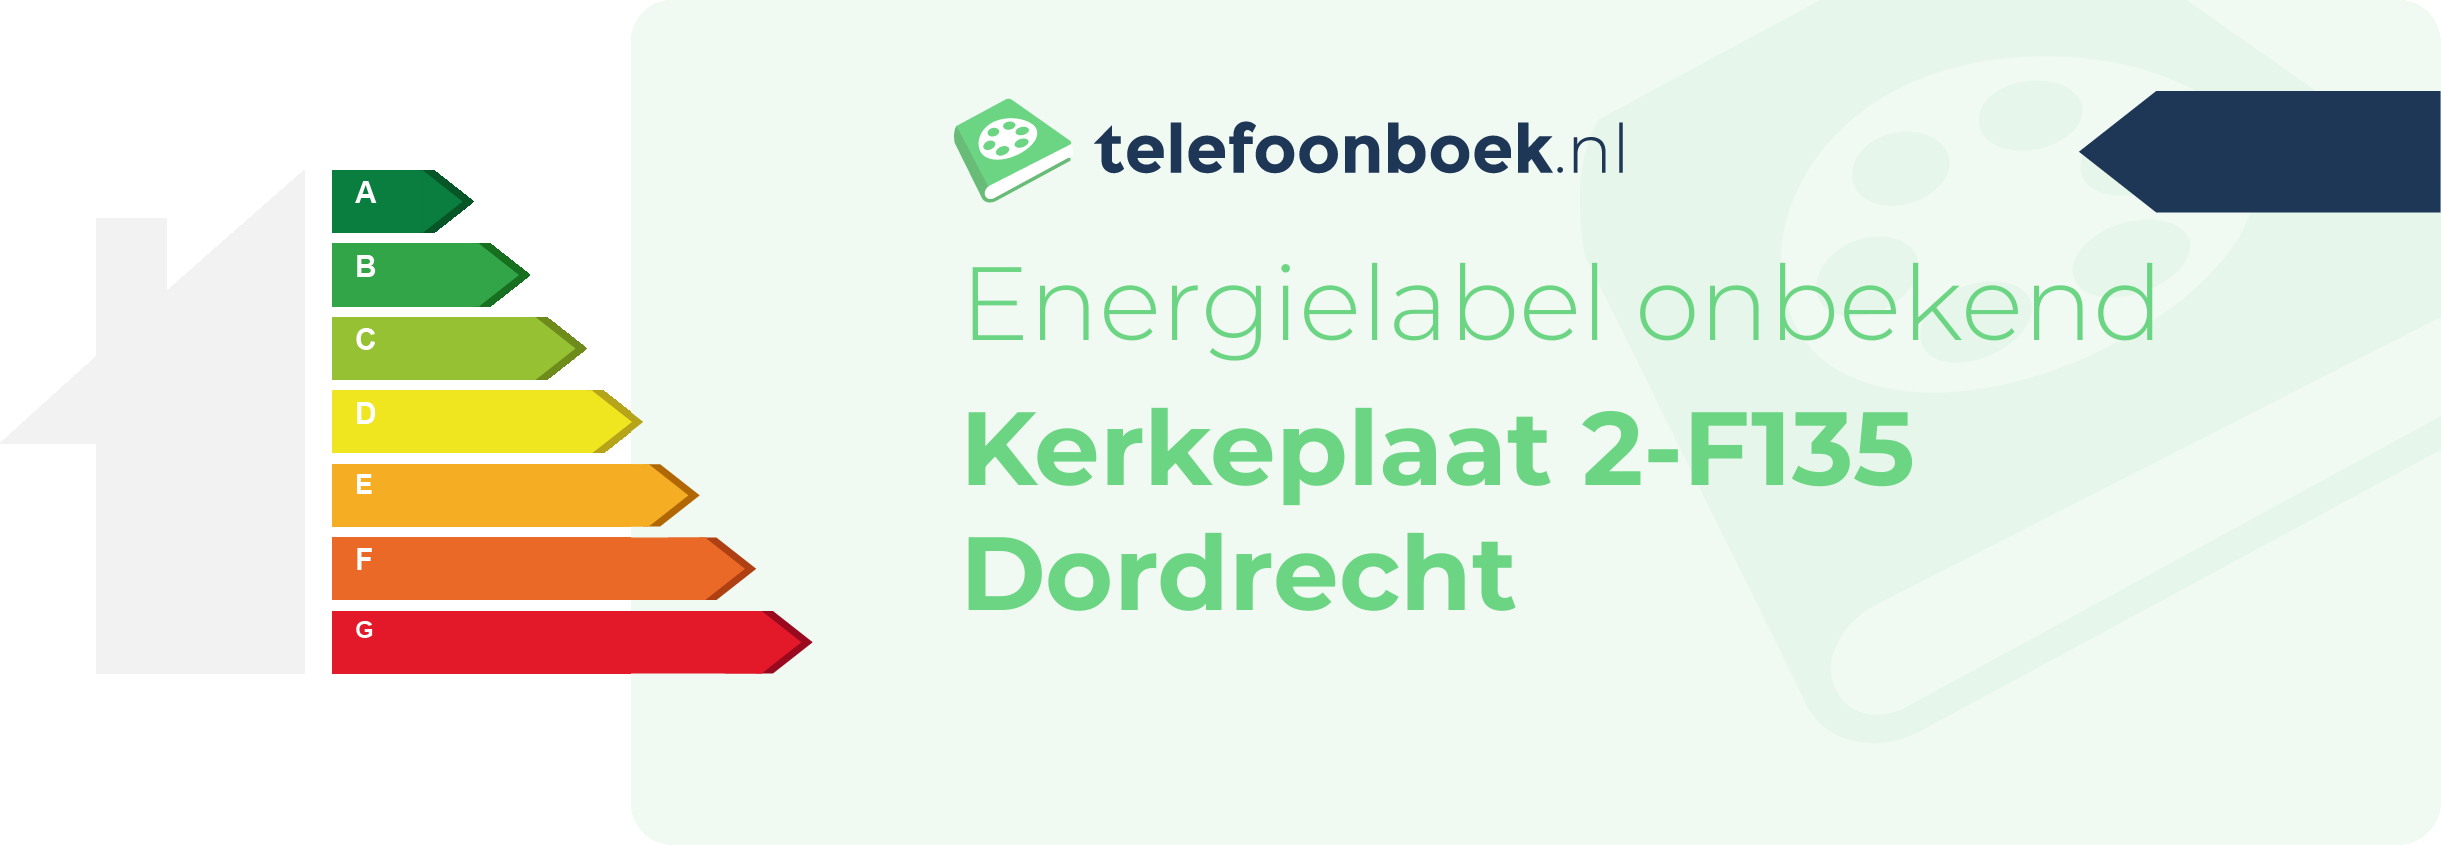 Energielabel Kerkeplaat 2-F135 Dordrecht